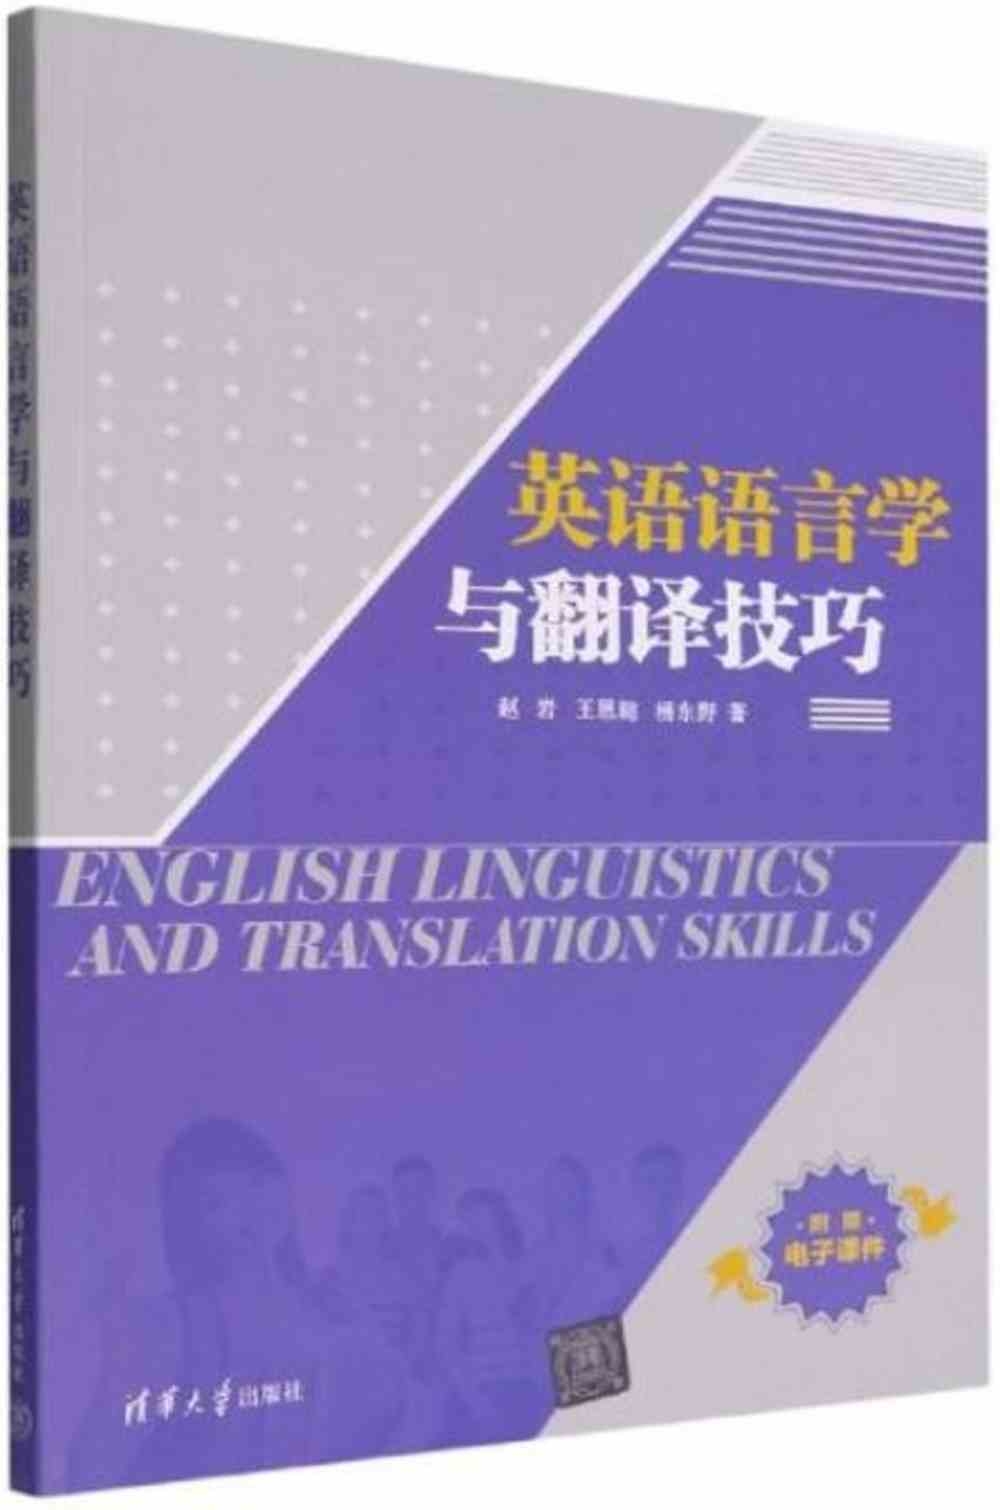 英語語言學與翻譯技巧